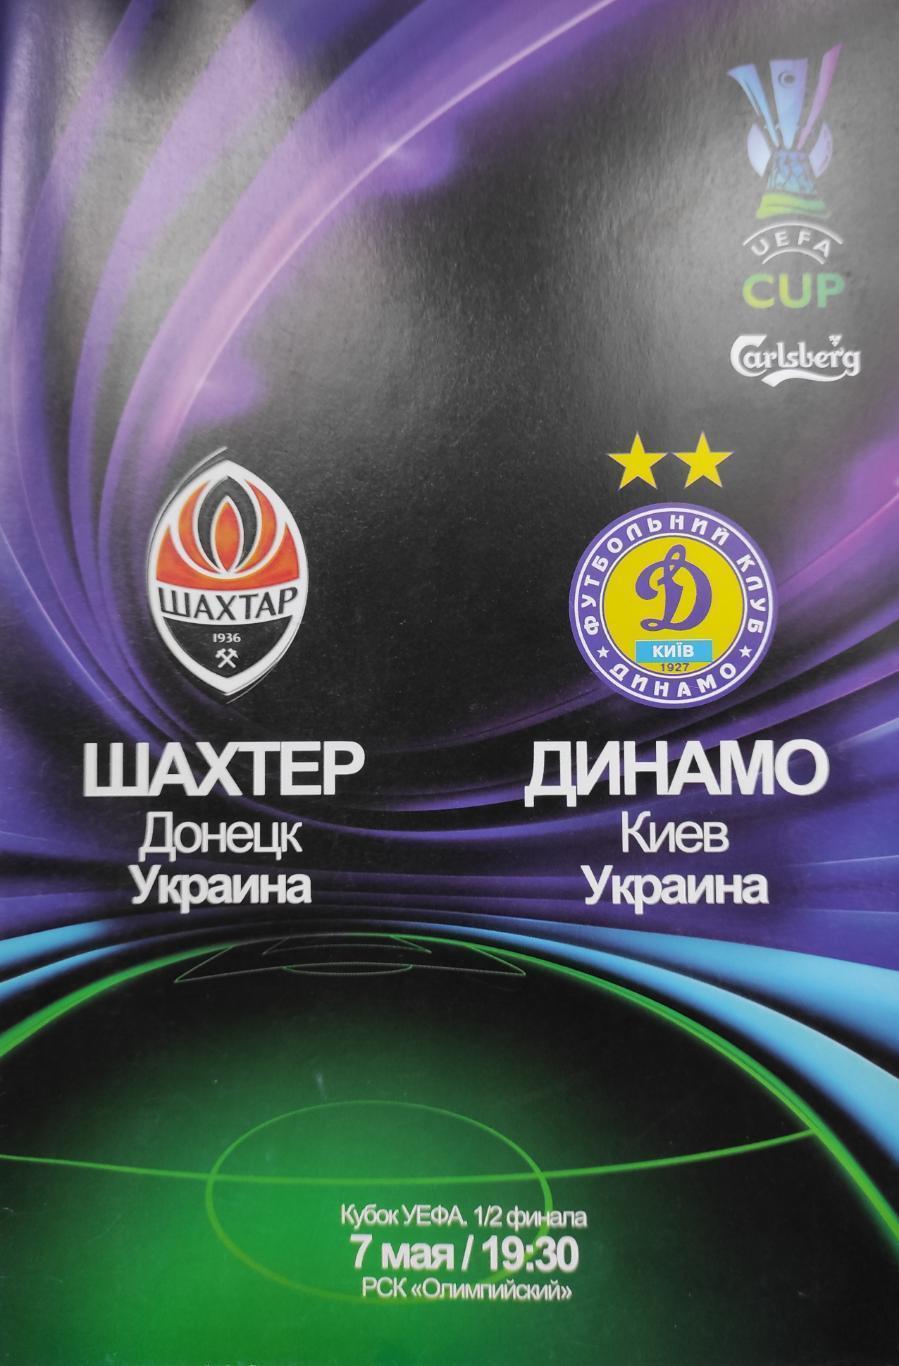 КУБОК УЕФА. ШАХТЕР ДОНЕЦК- ДИНАМО КИЕВ. 2009.м.